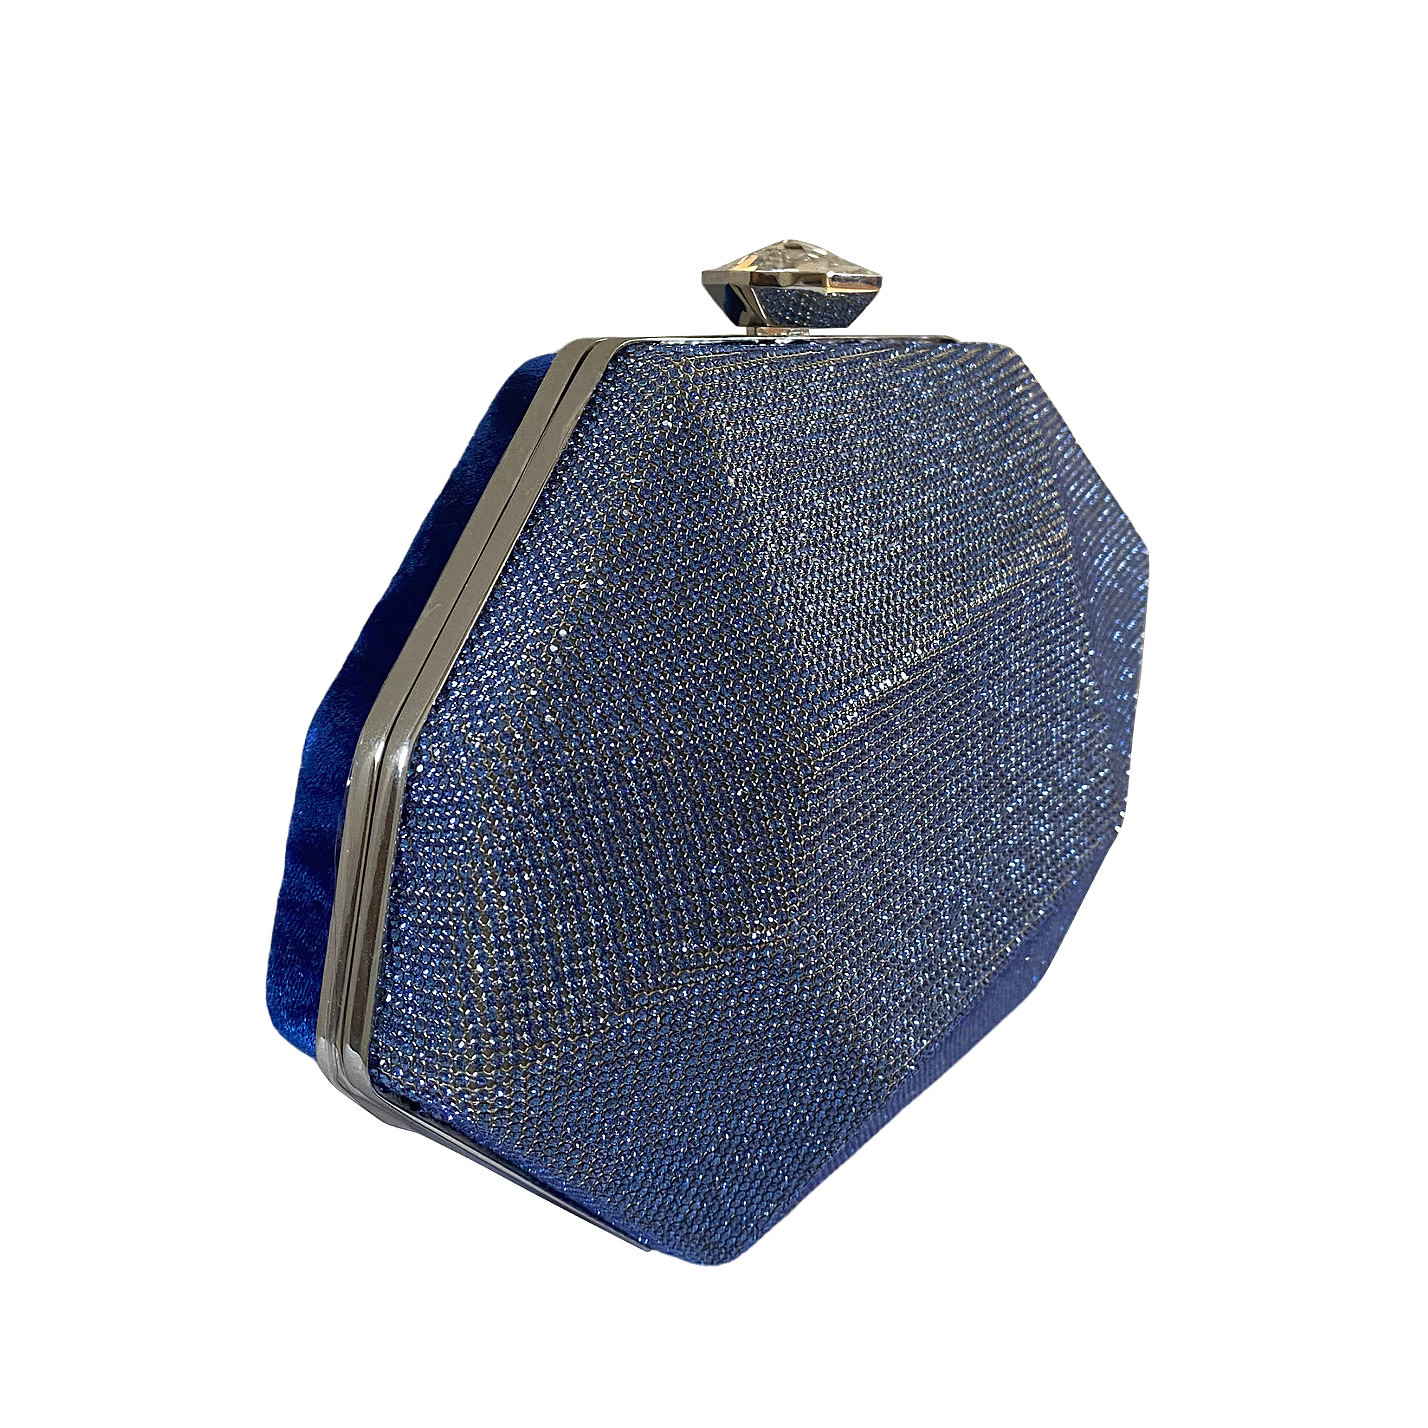 Atelier Swarovski Crystal geometric clutch with velvet contrast